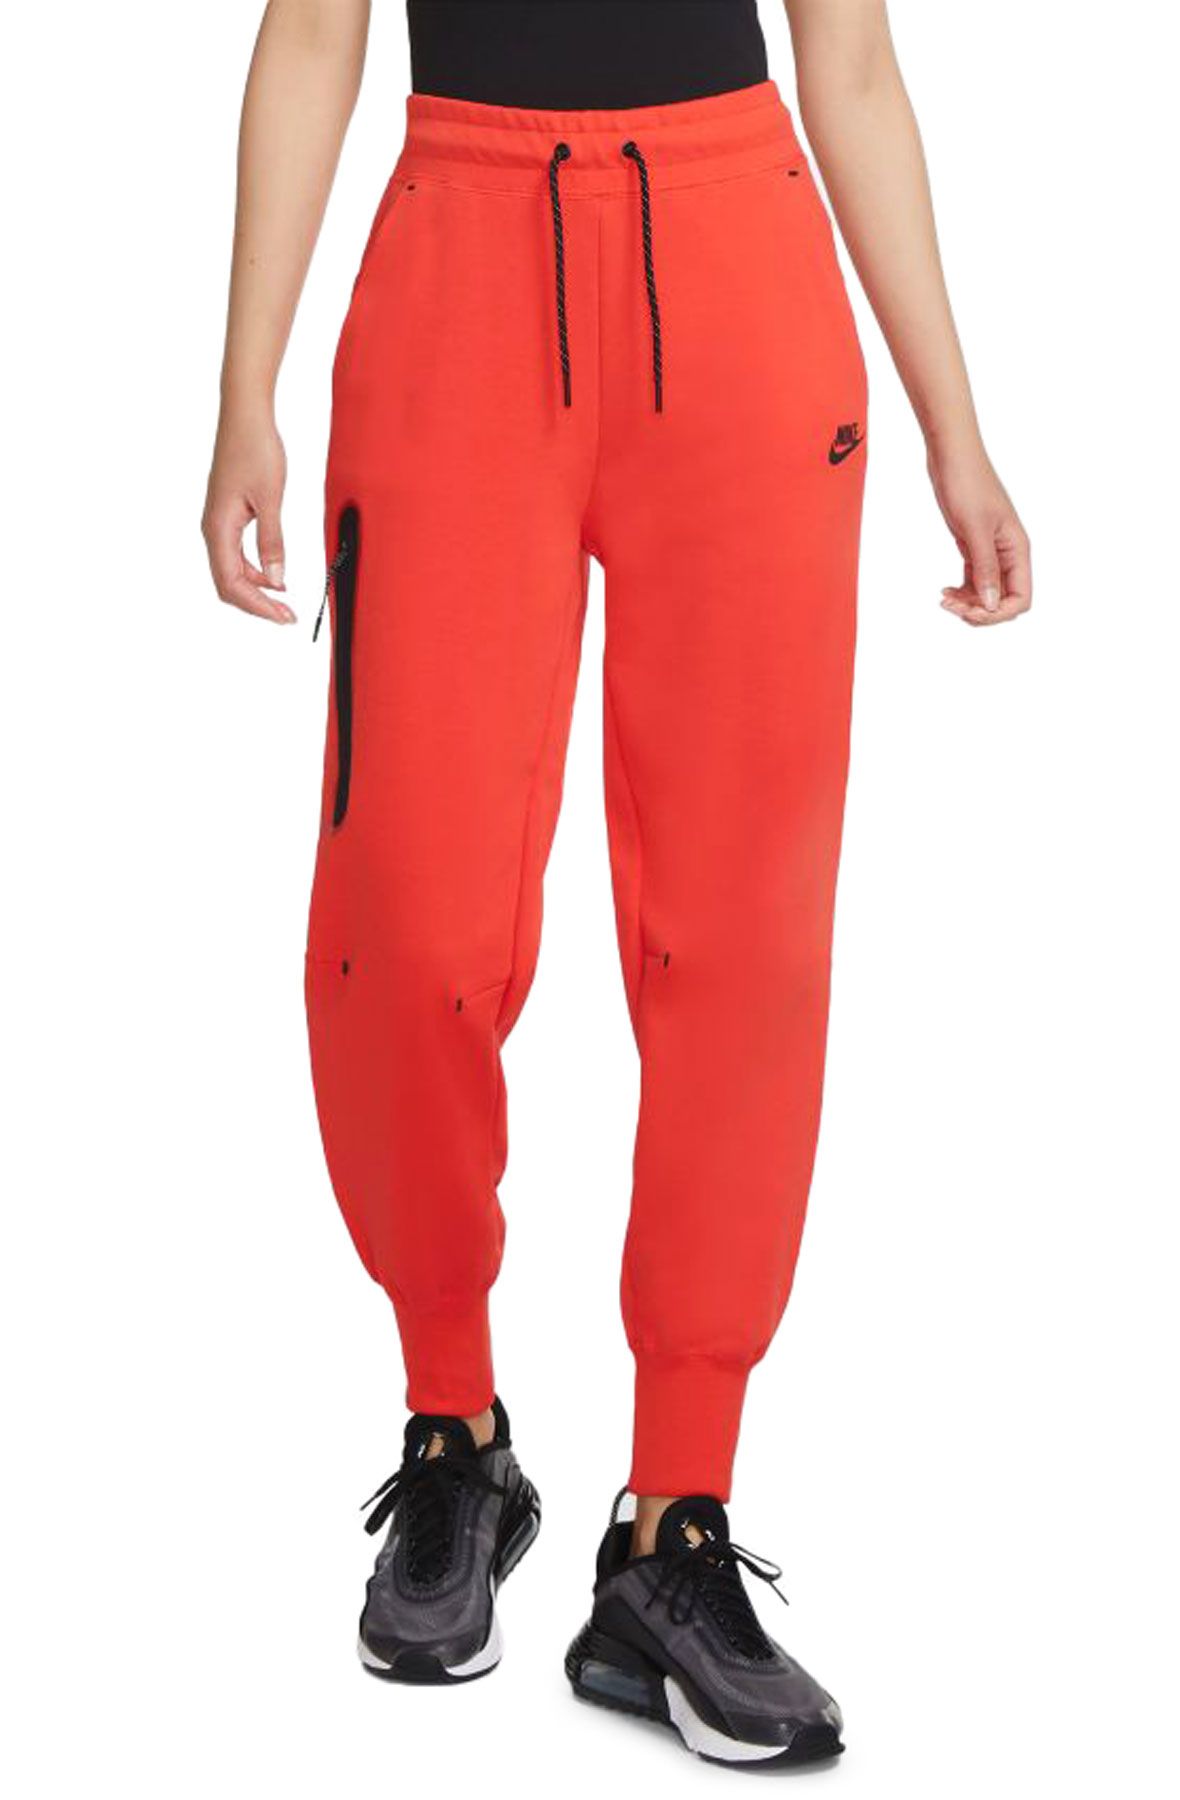 Nike Sportswear Tech Fleece Joggers Womens L CW4292-010 Black Sweatpants  for sale online